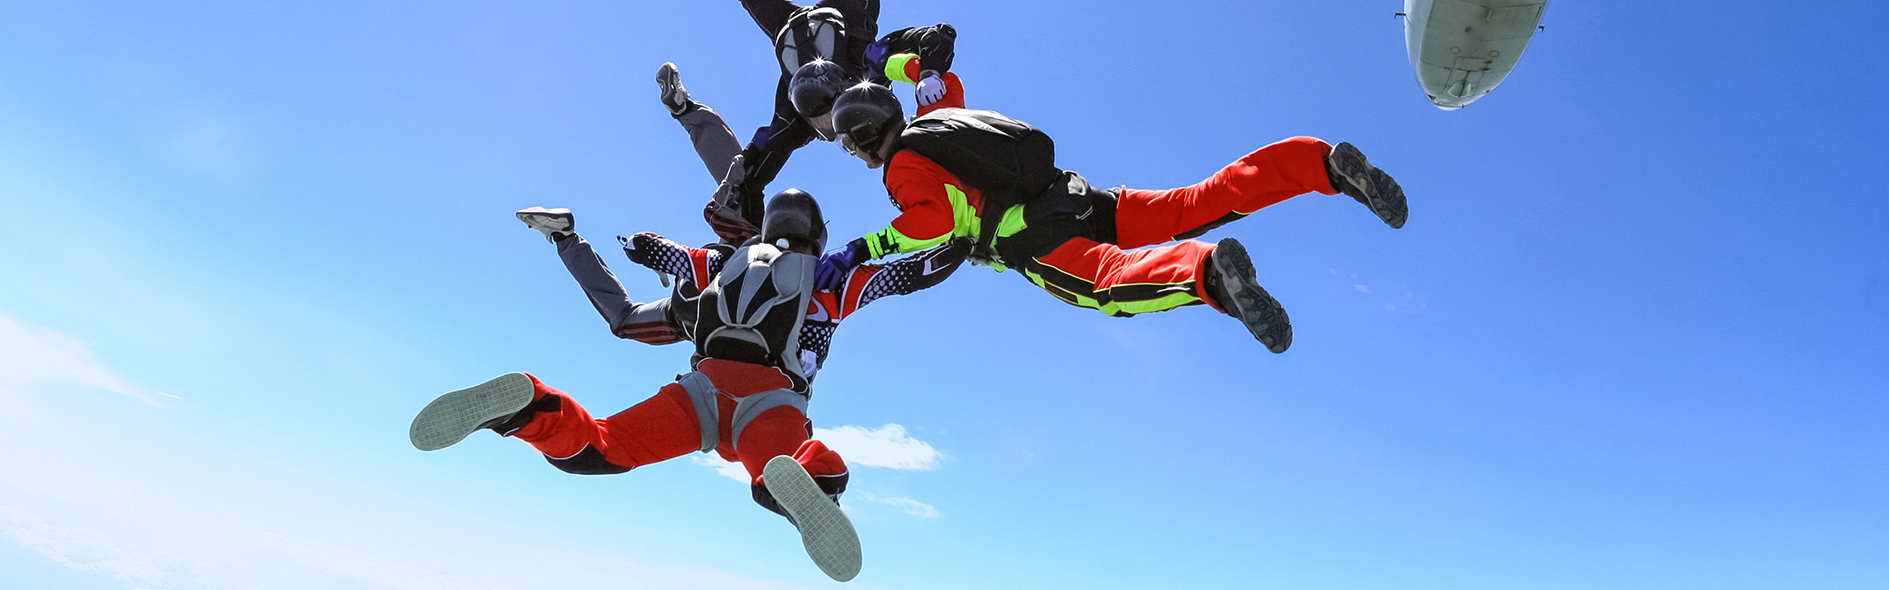 跳伞者体验惊心动魄时刻的图片。但是，遵守化学品法规不应如此。